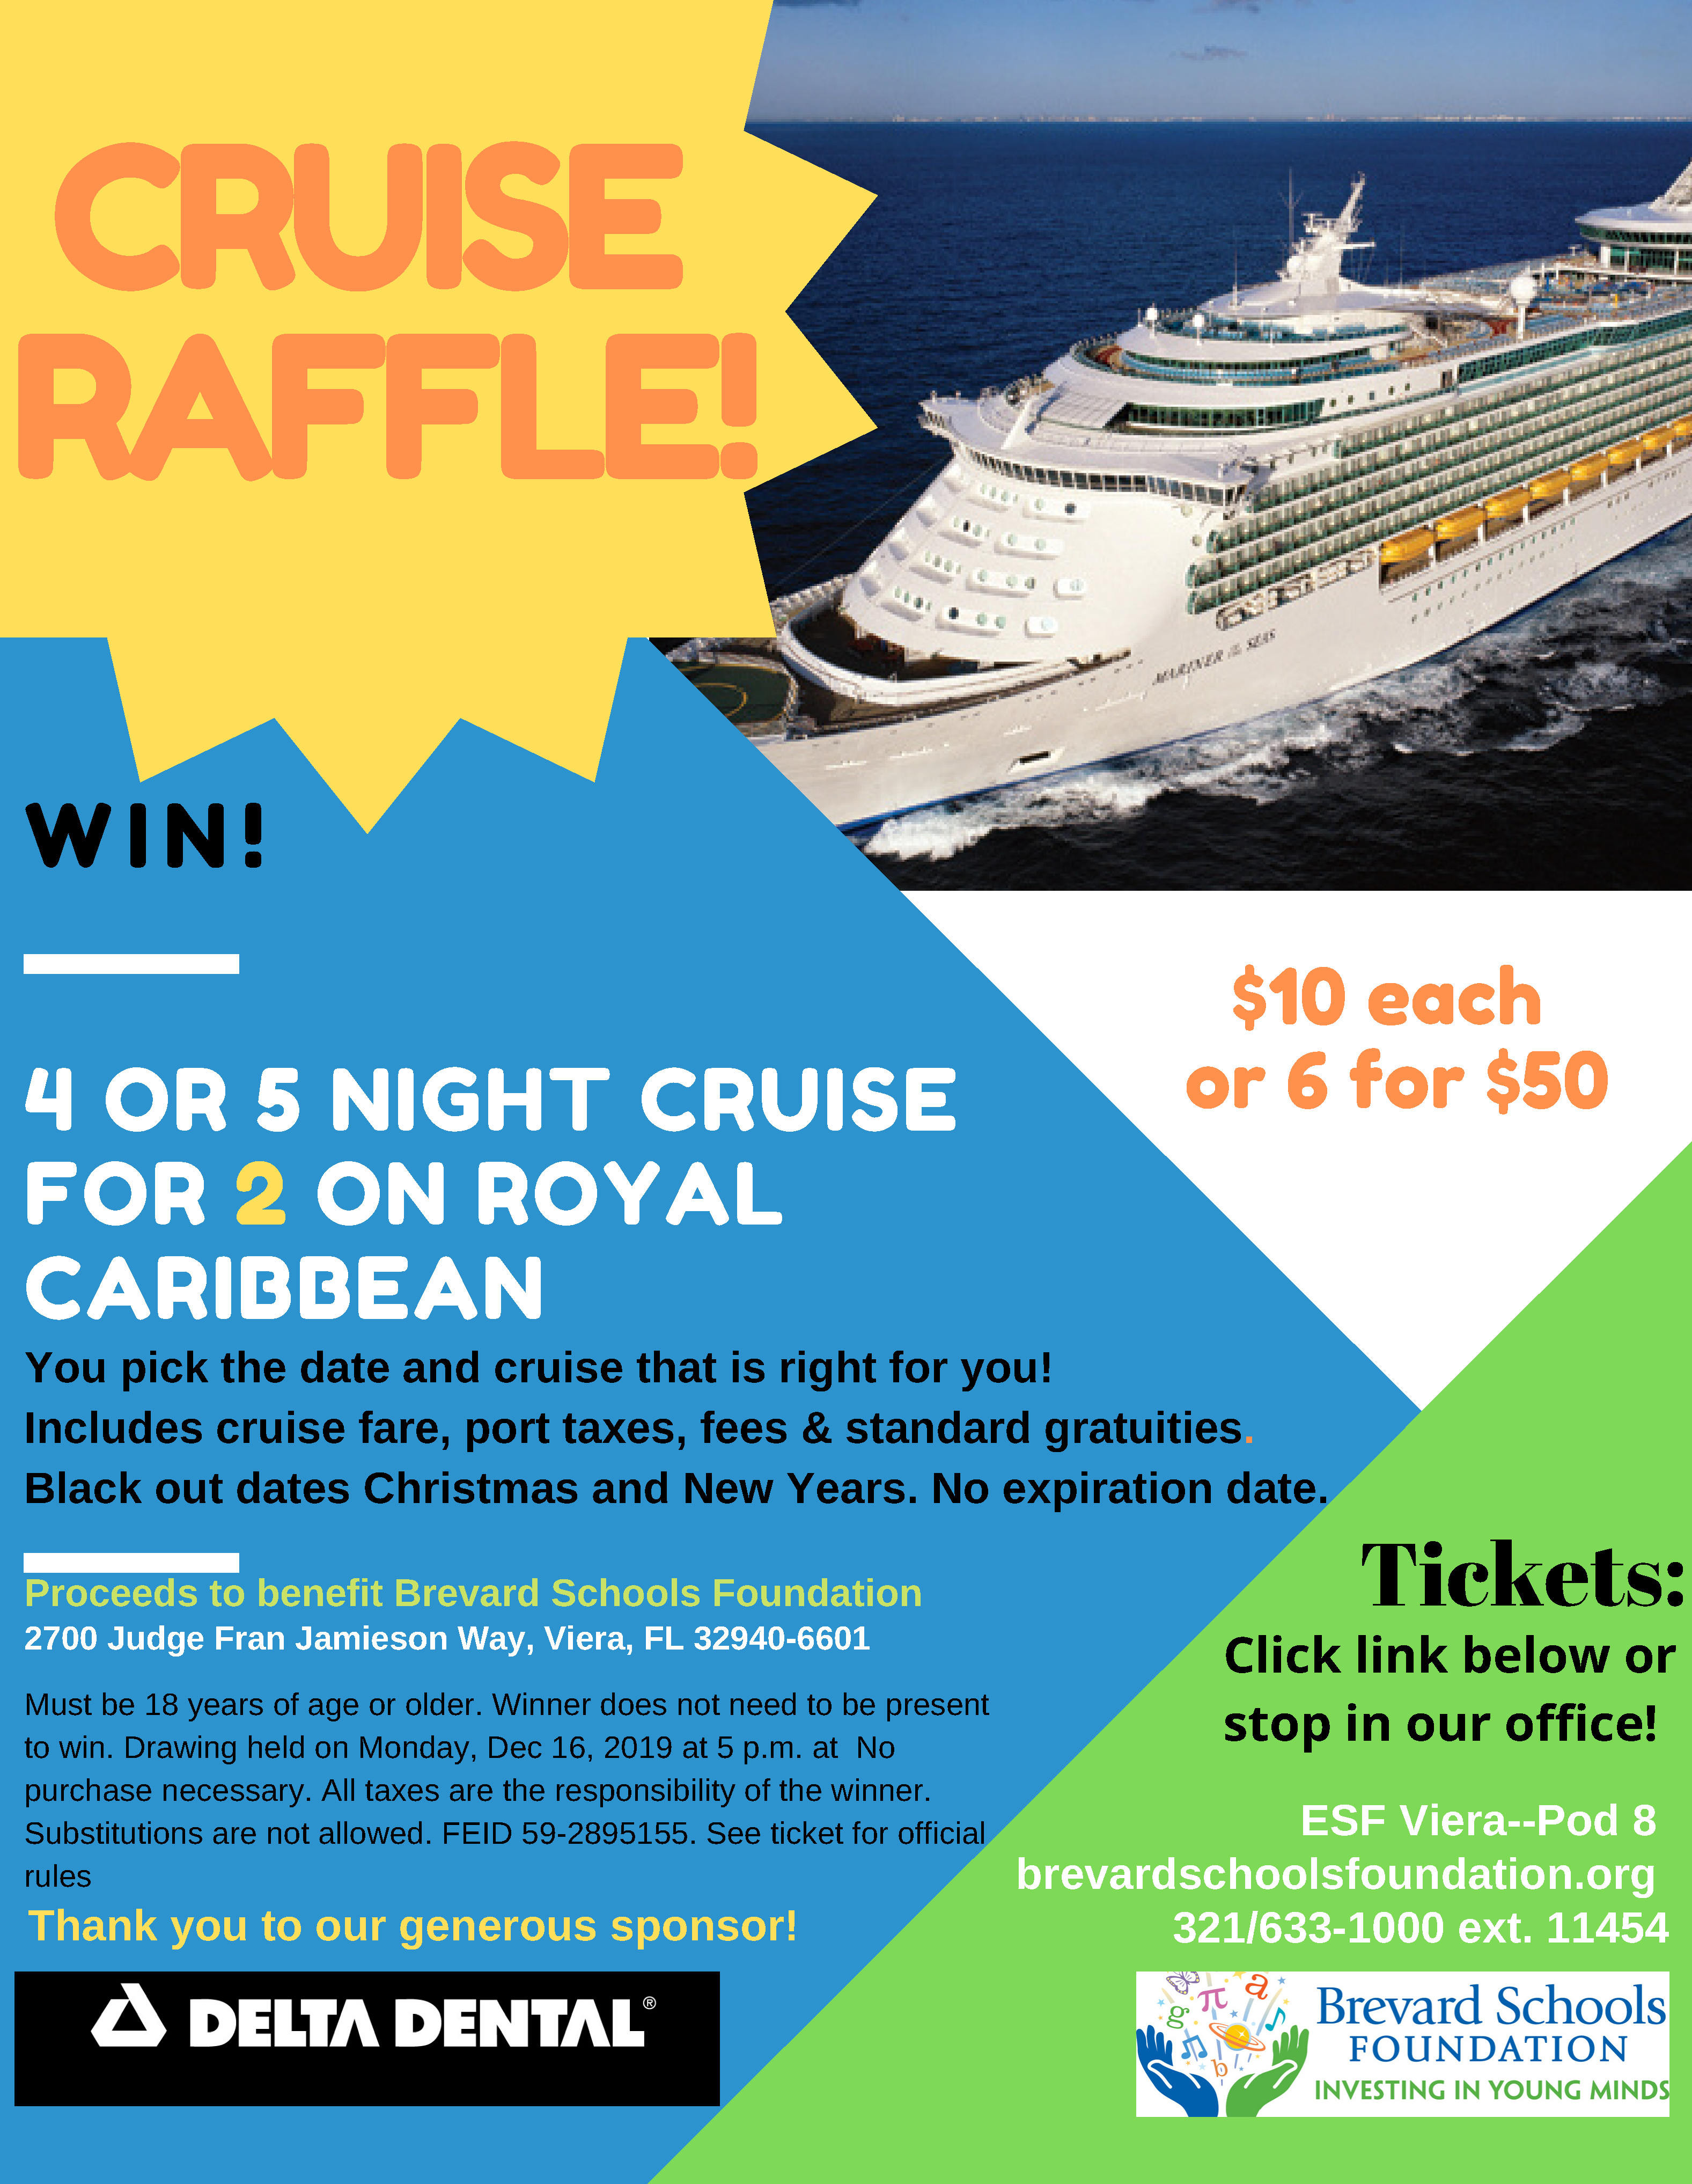 Copy of Cruise raffle flyer (4) Brevard Schools Foundation FL